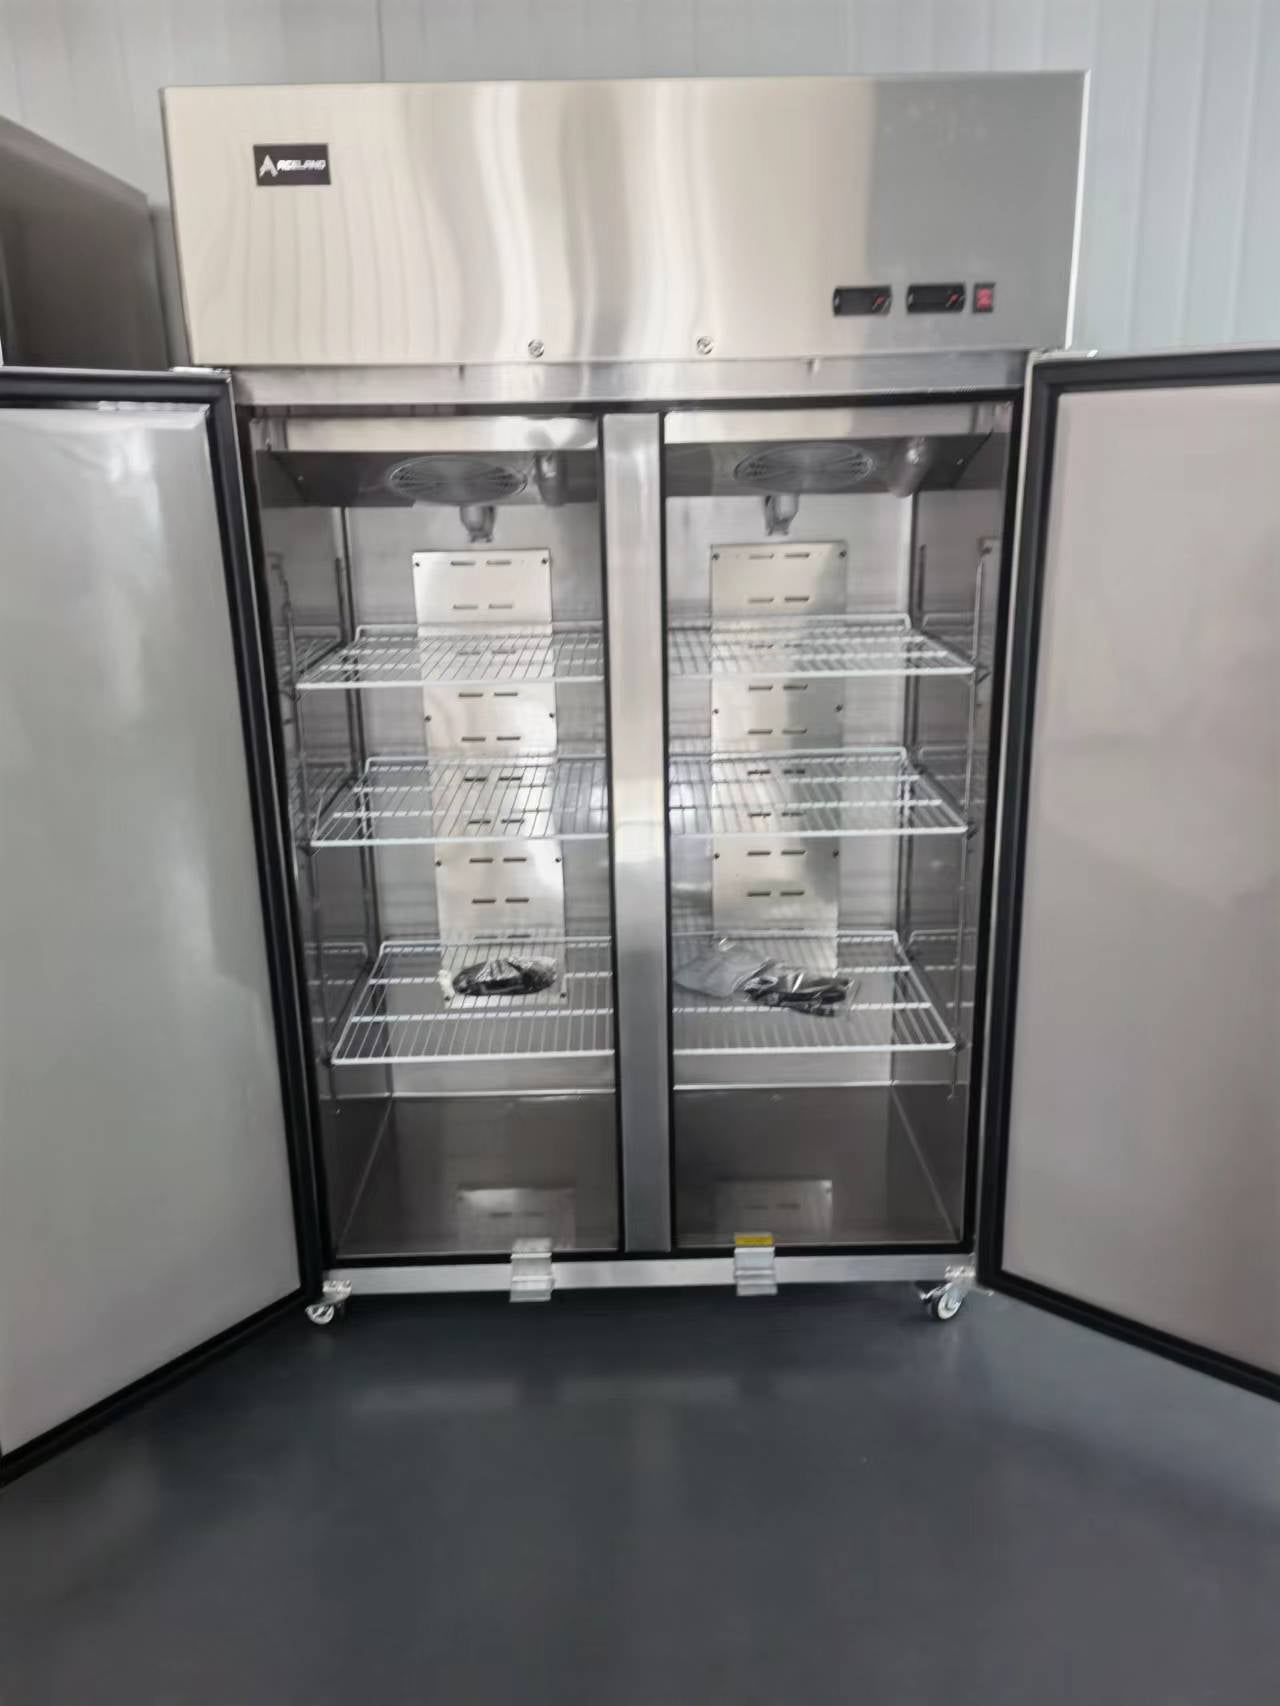 Commercial Refrigerator Freezer Combo, 2 door 36 Cu.ft Reach in Solid door  Upright Fridge Freezer Combination